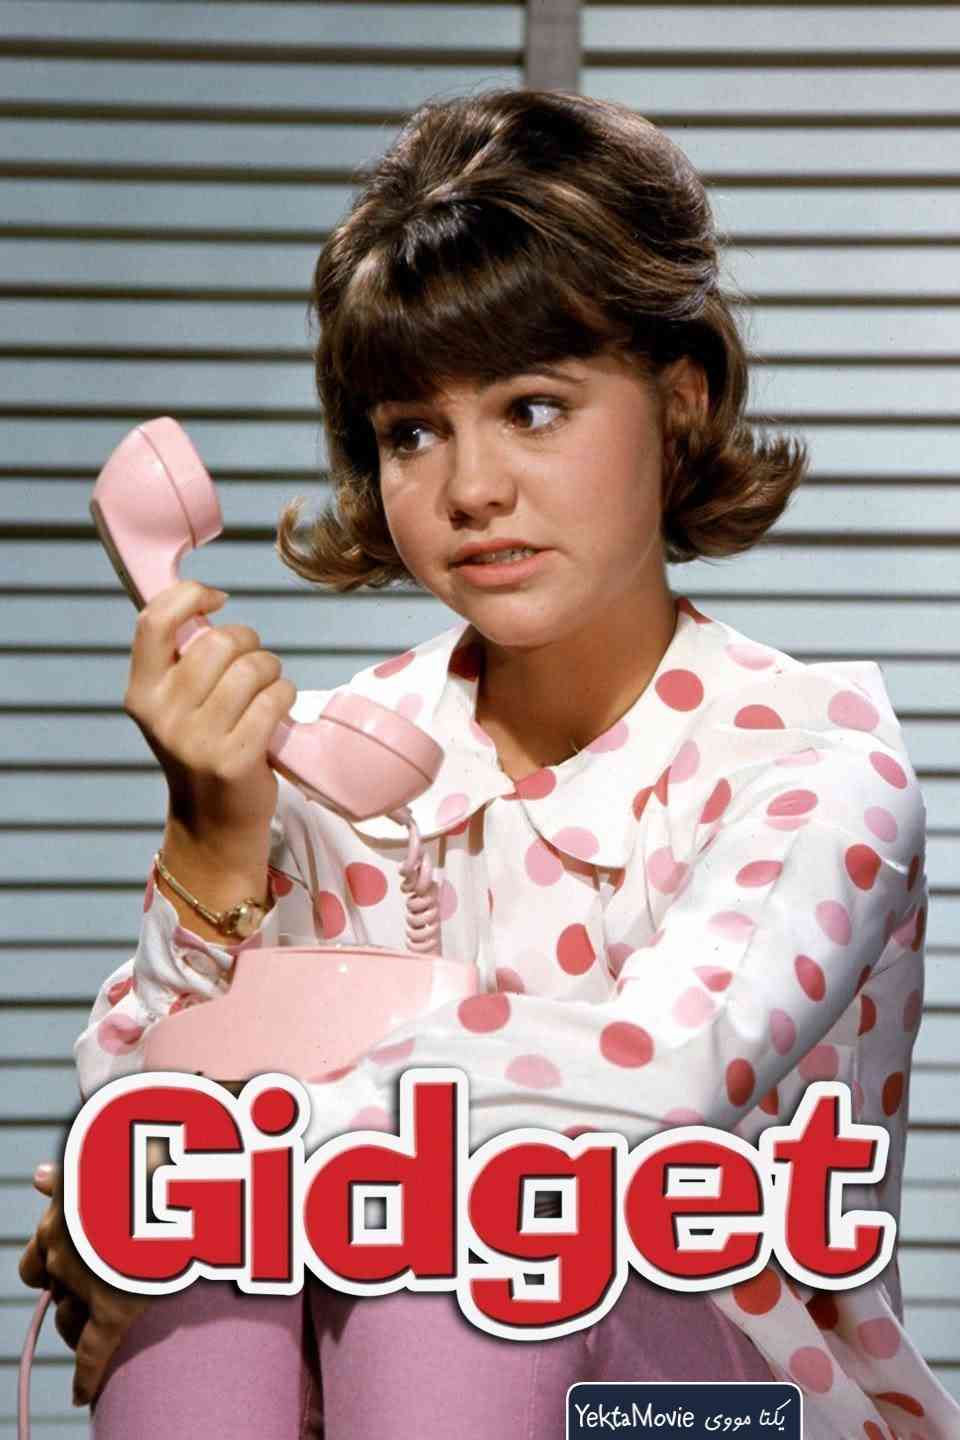 سریال Gidget 1965 ( گیجت ۱۹۶۵ )